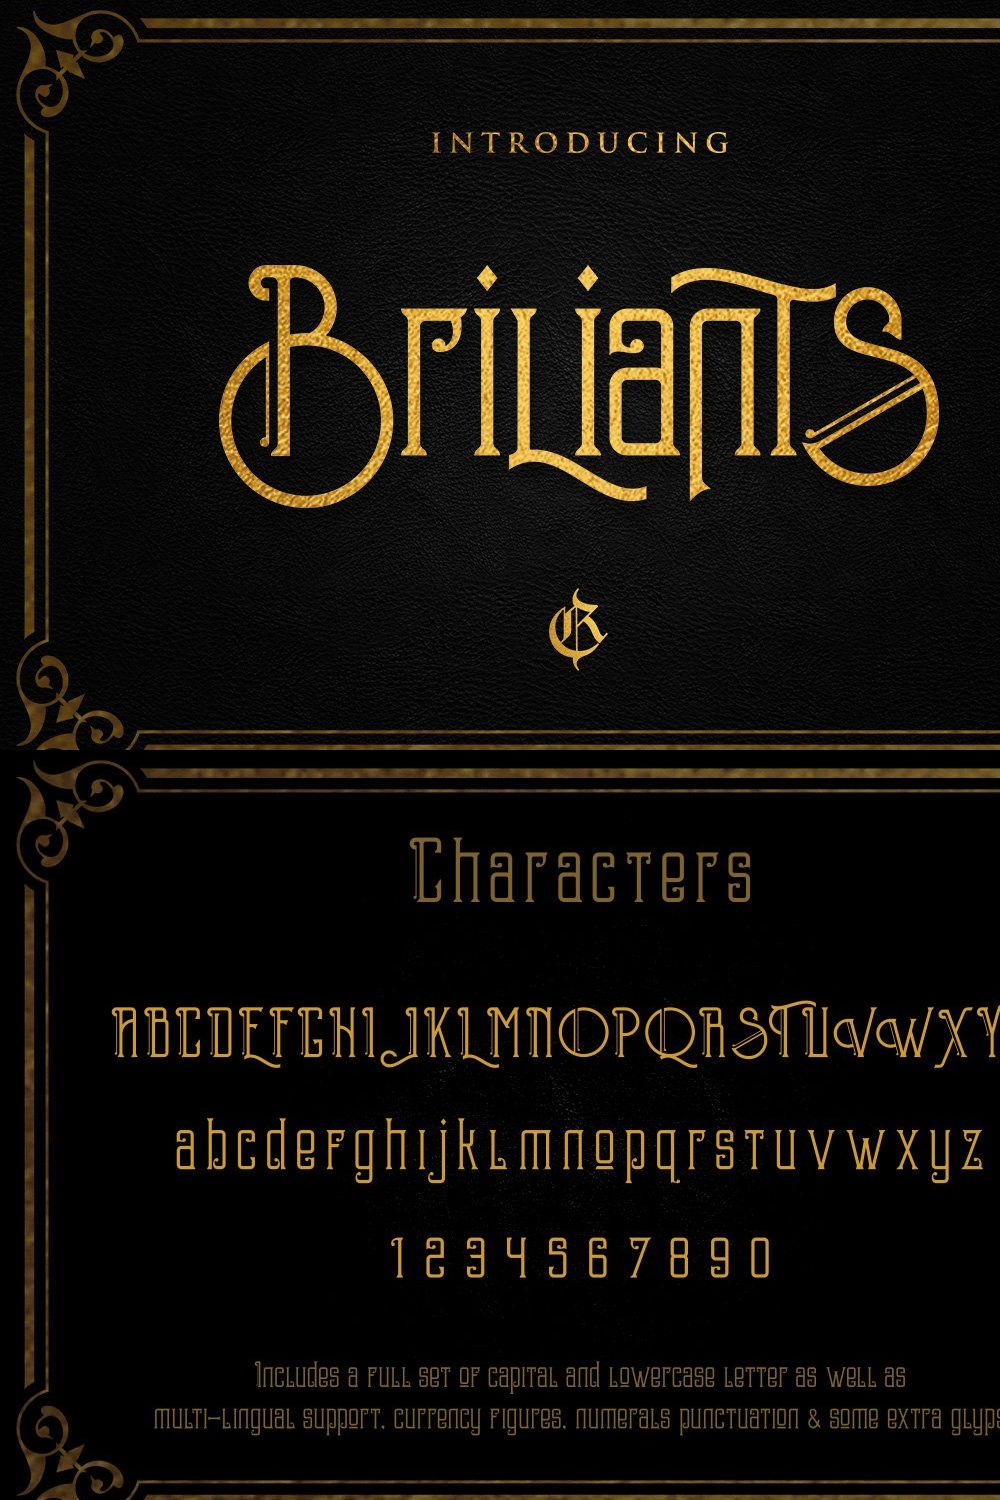 Briliants + Bonus pinterest preview image.